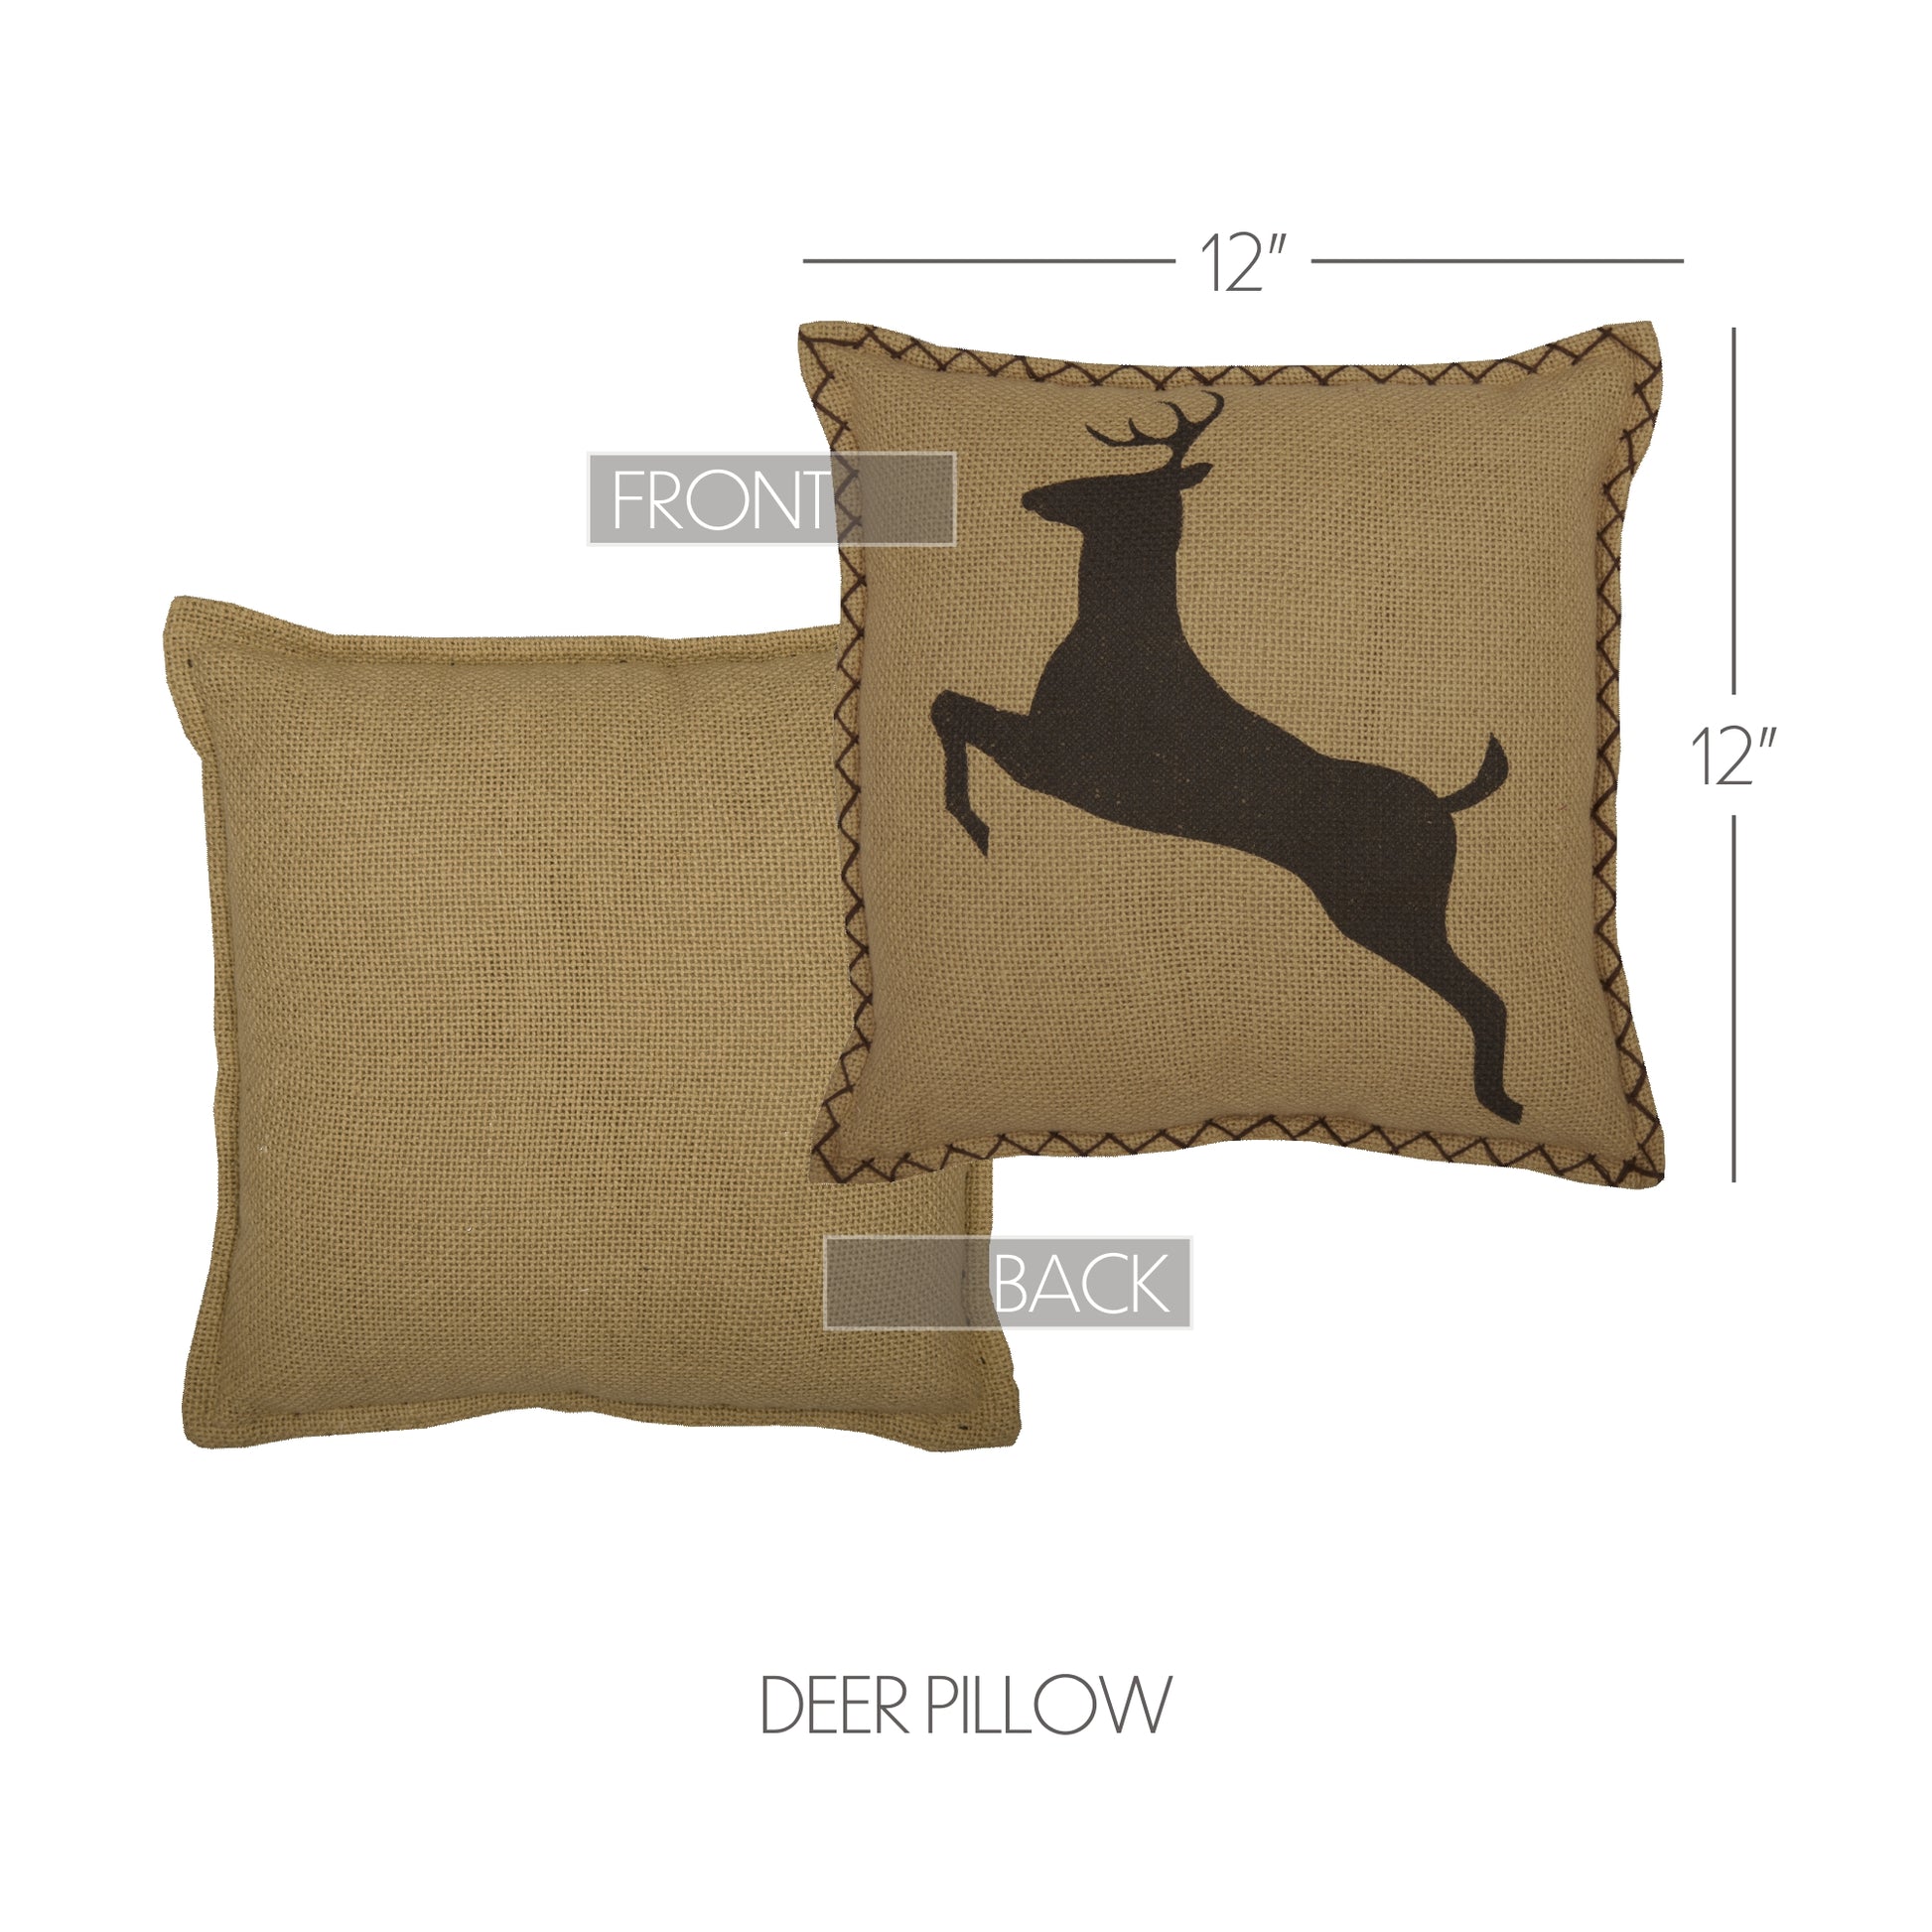 56671-Dawson-Star-Deer-Pillow-12x12-image-1